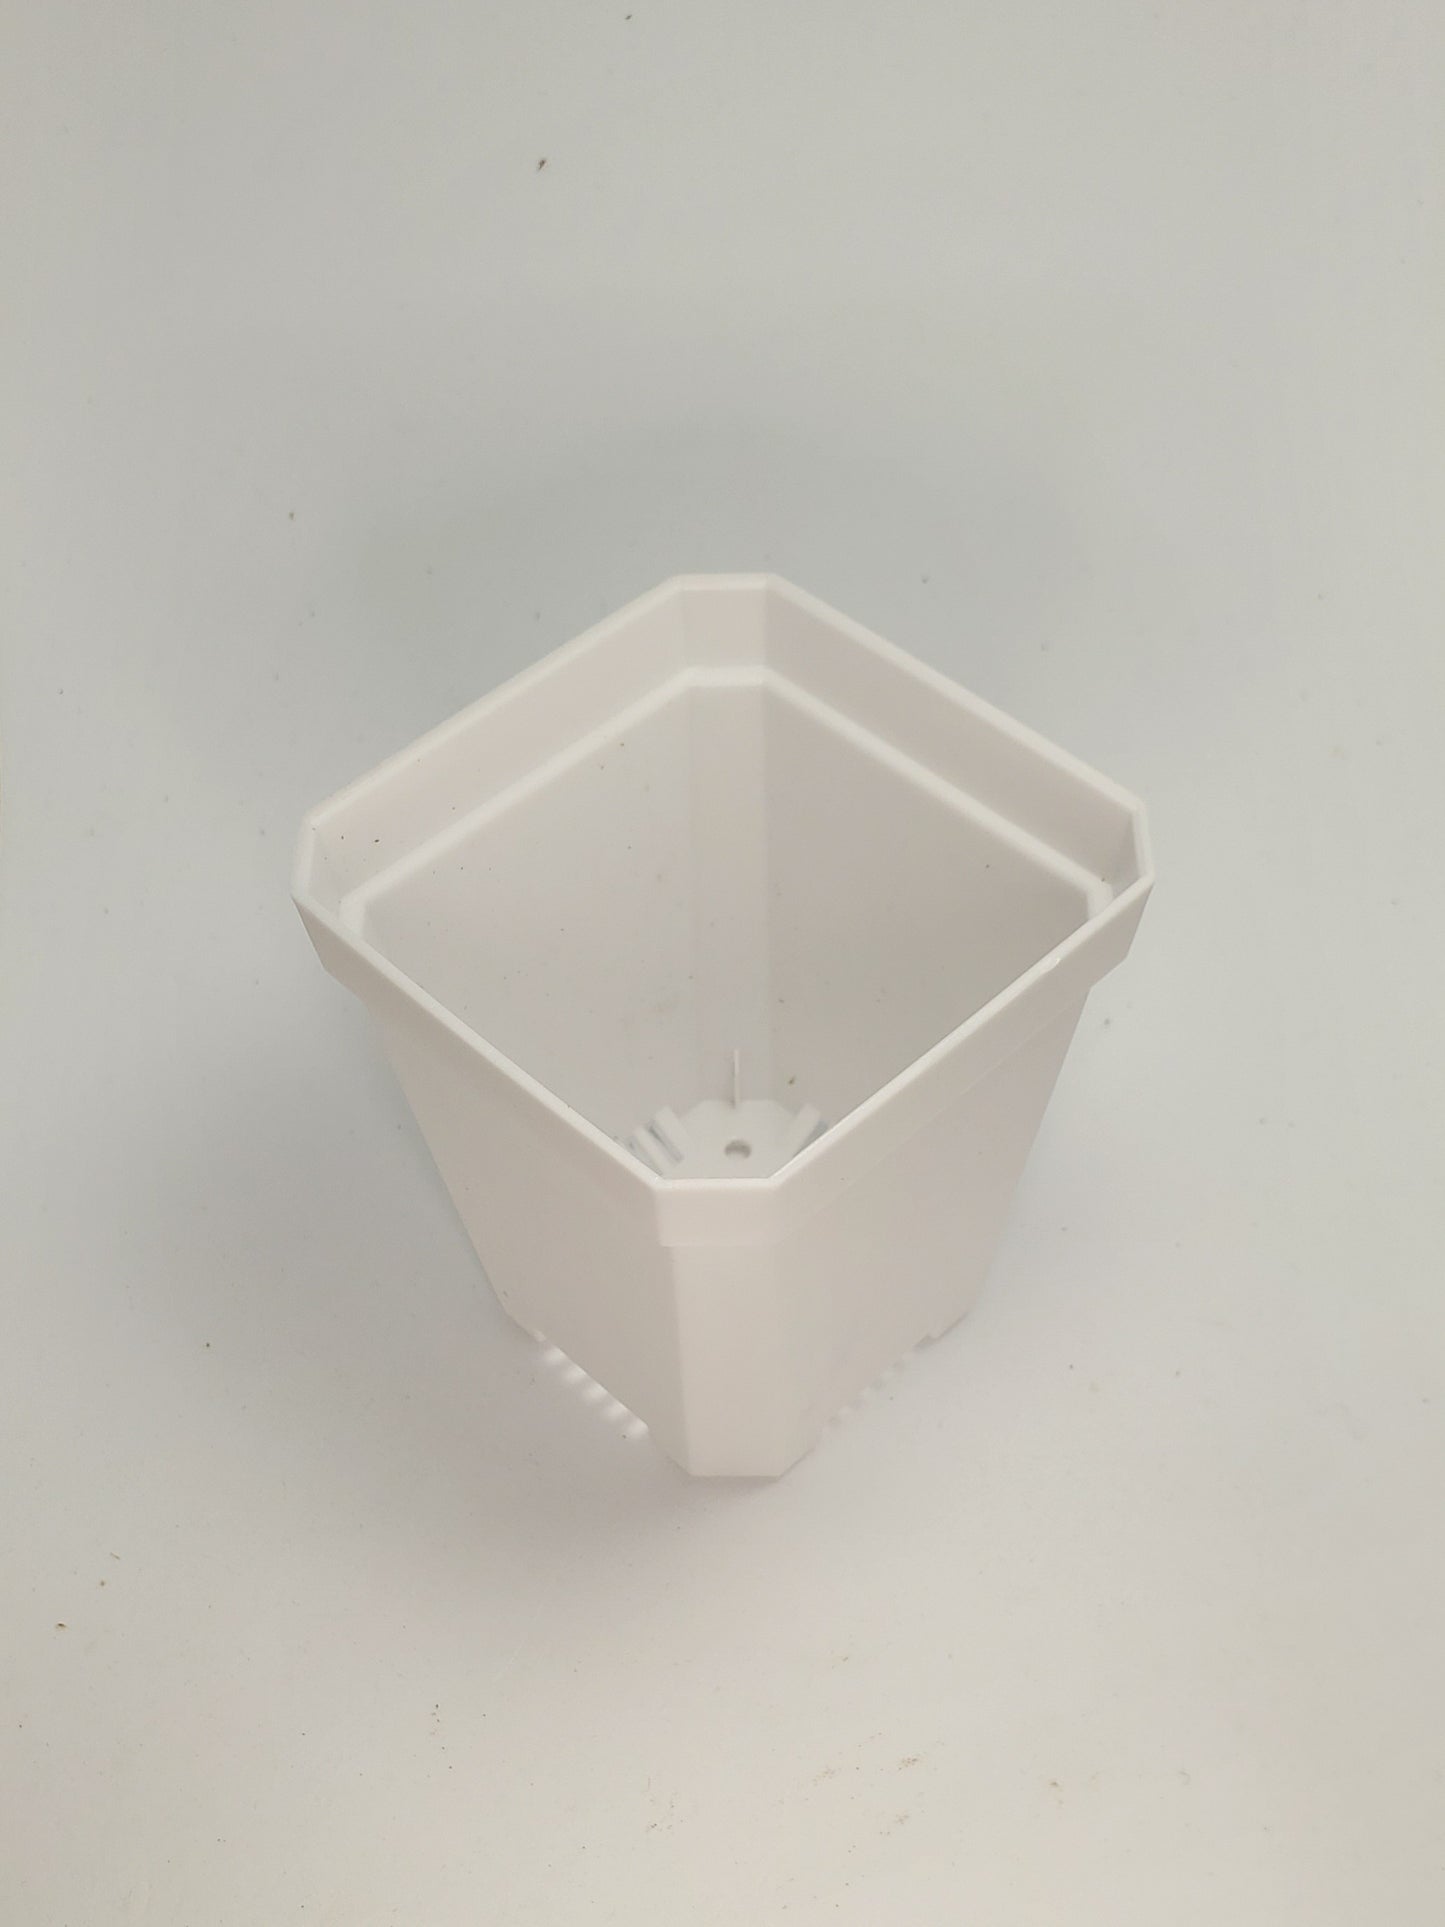 Pot - Square 3" white